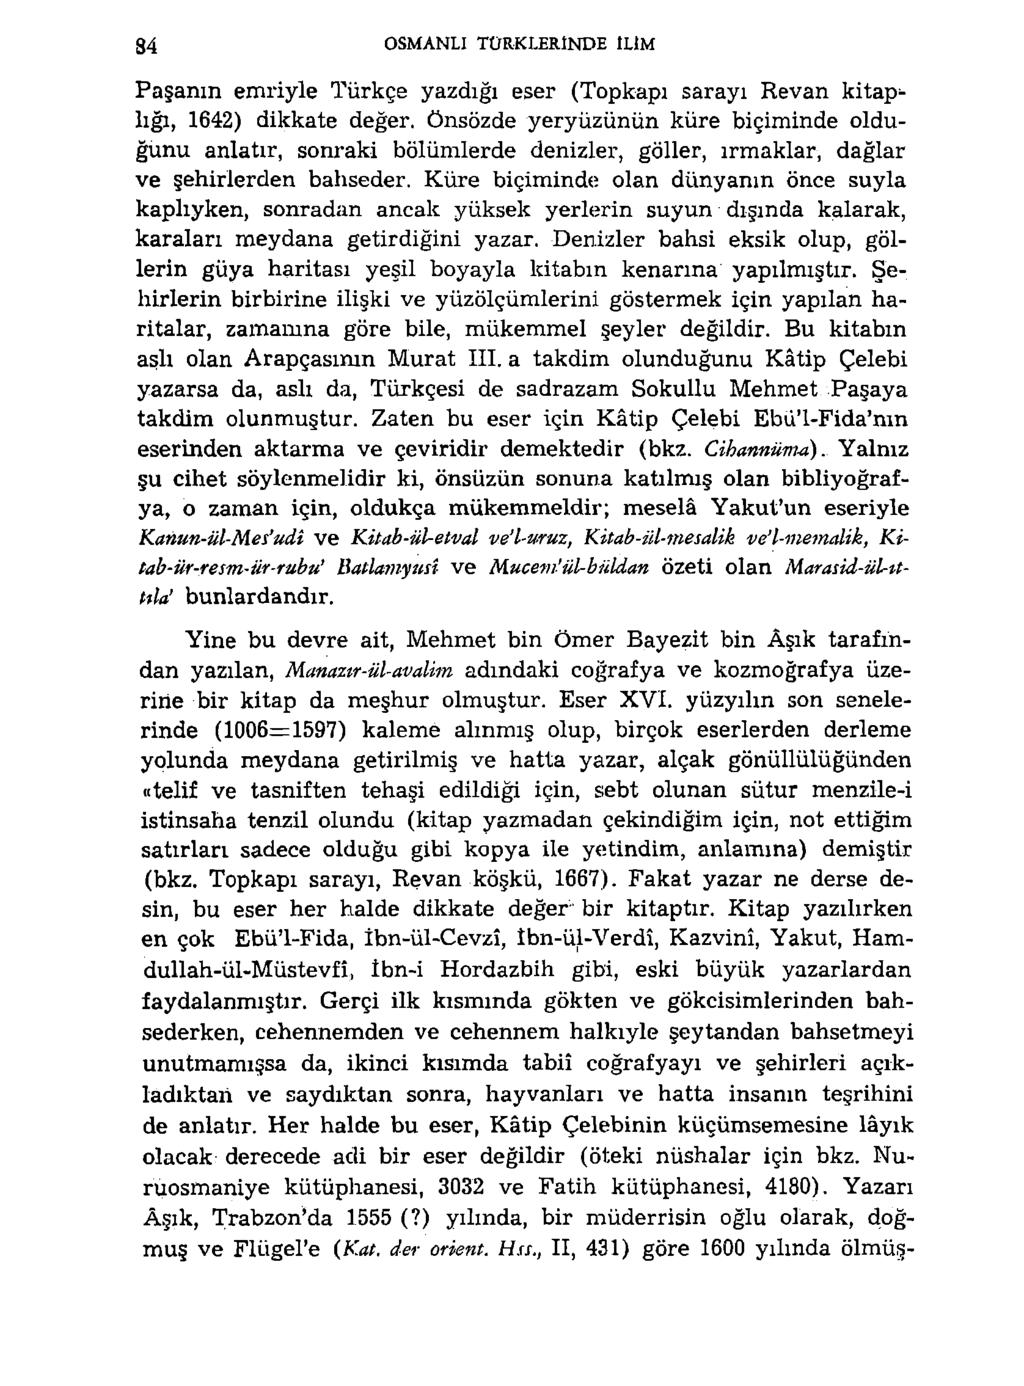 84 OSMANLI TÜRKLERINDE ILIM Paşanın emriyle Türkçe yazdığı eser (Topkapı sarayı Revan kitaplığı, 1642) dikkate değer, önsözde yeryüzünün küre biçiminde olduğunu anlatır, sonraki bölümlerde denizler,